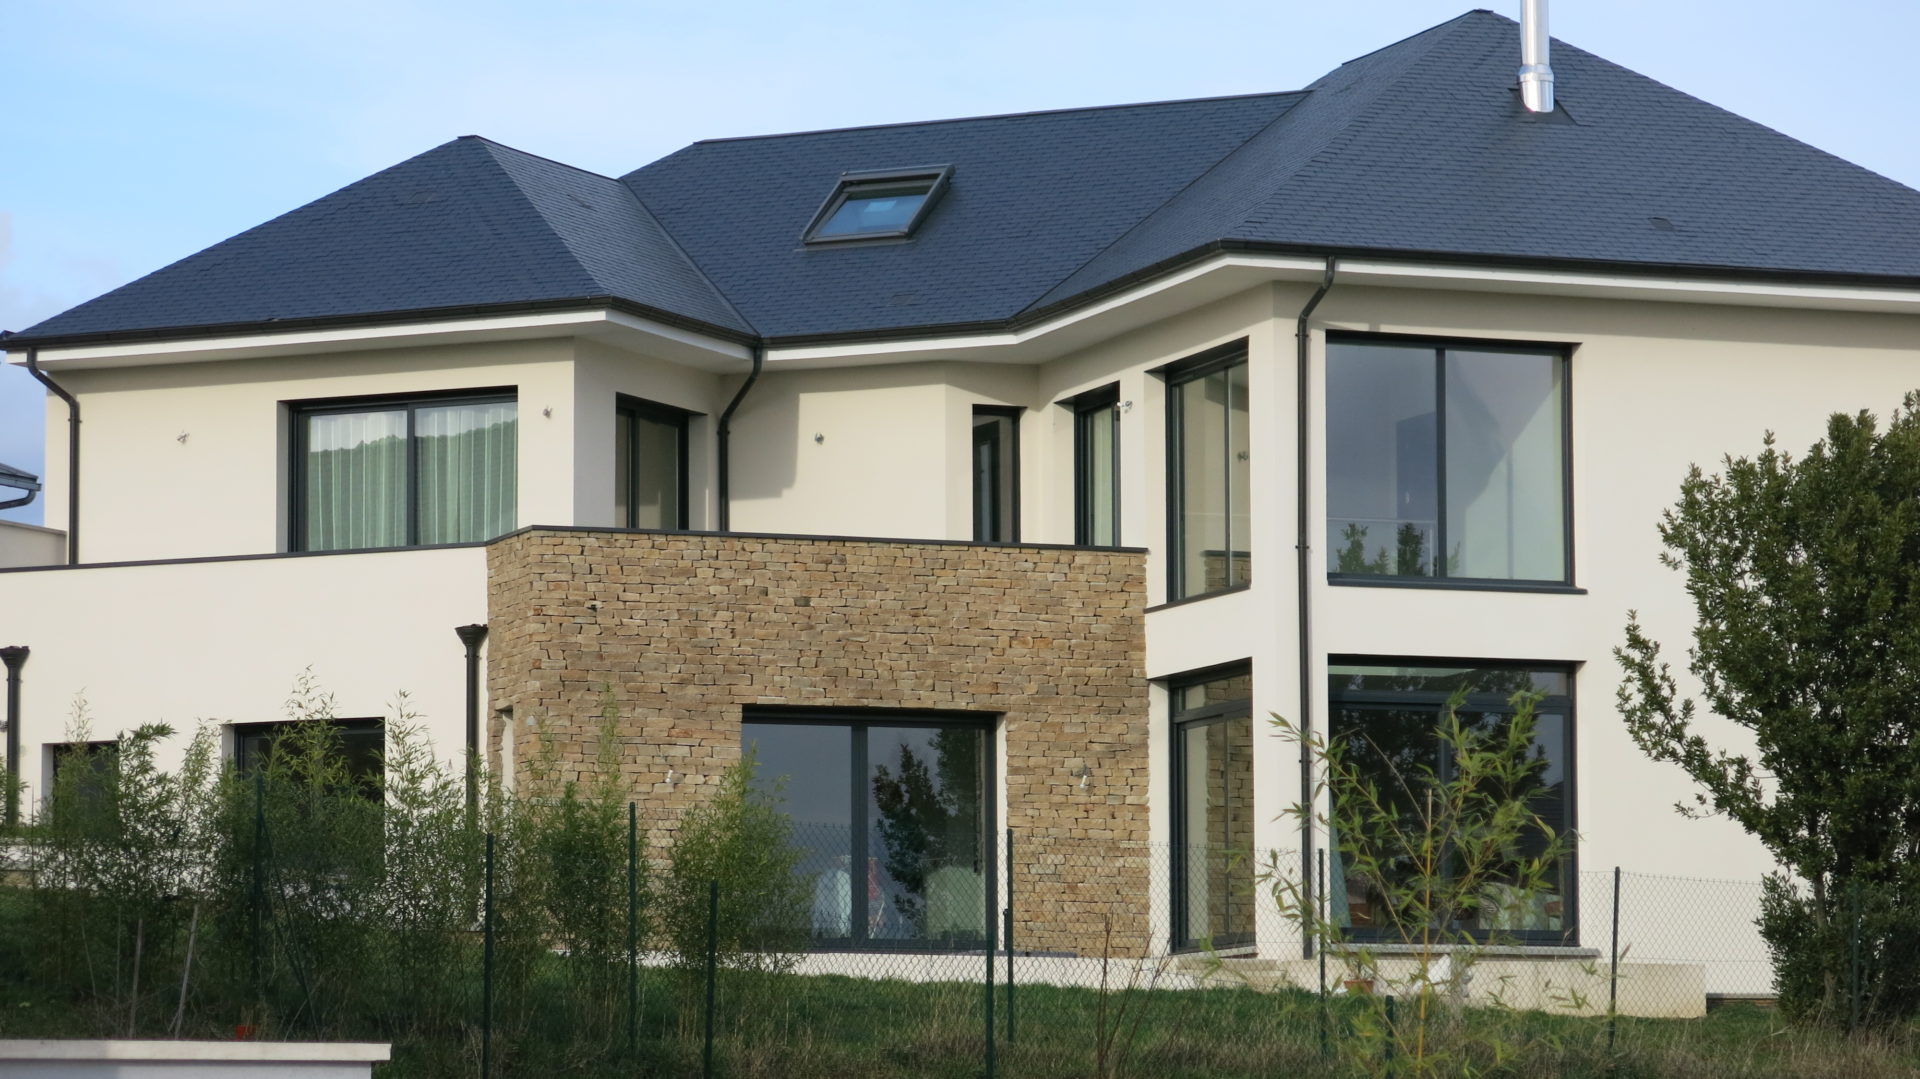 Photo d'une grande maison construite avec de volumes simples et une toiture en pente